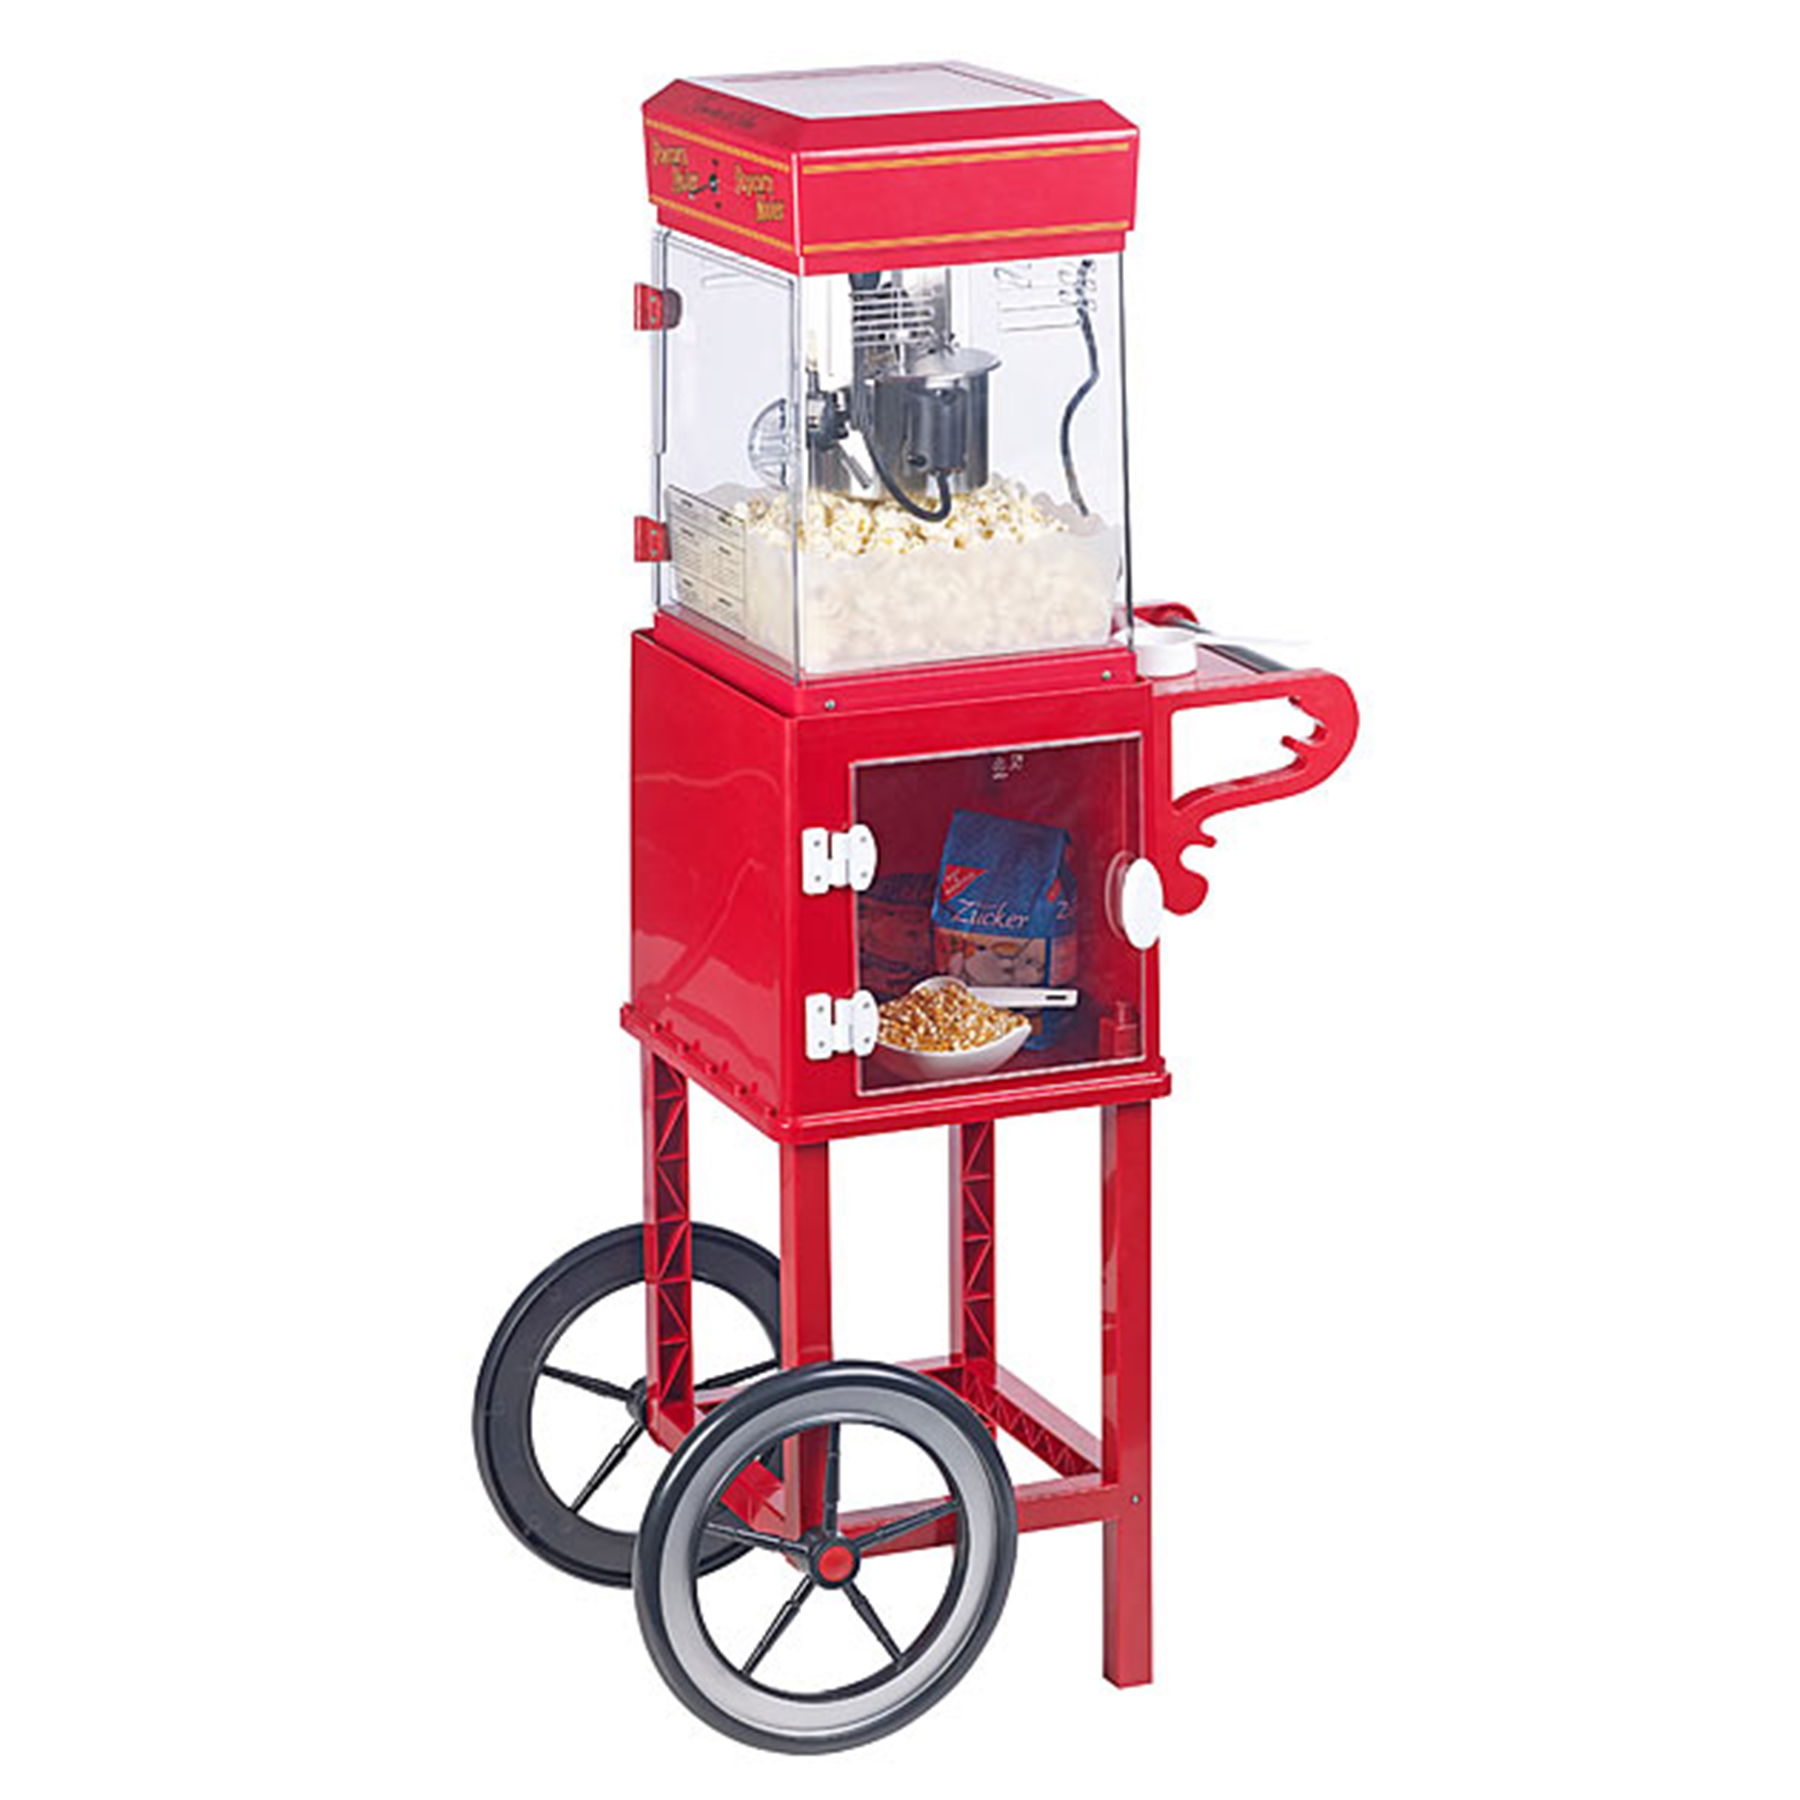 Popcornmaschine zum Popcorn selber machen, XXL Popcornwagen für zuhause, Amerikanischer Premium Popcornmaker, Profi Popcornmaschine im Retro-Design